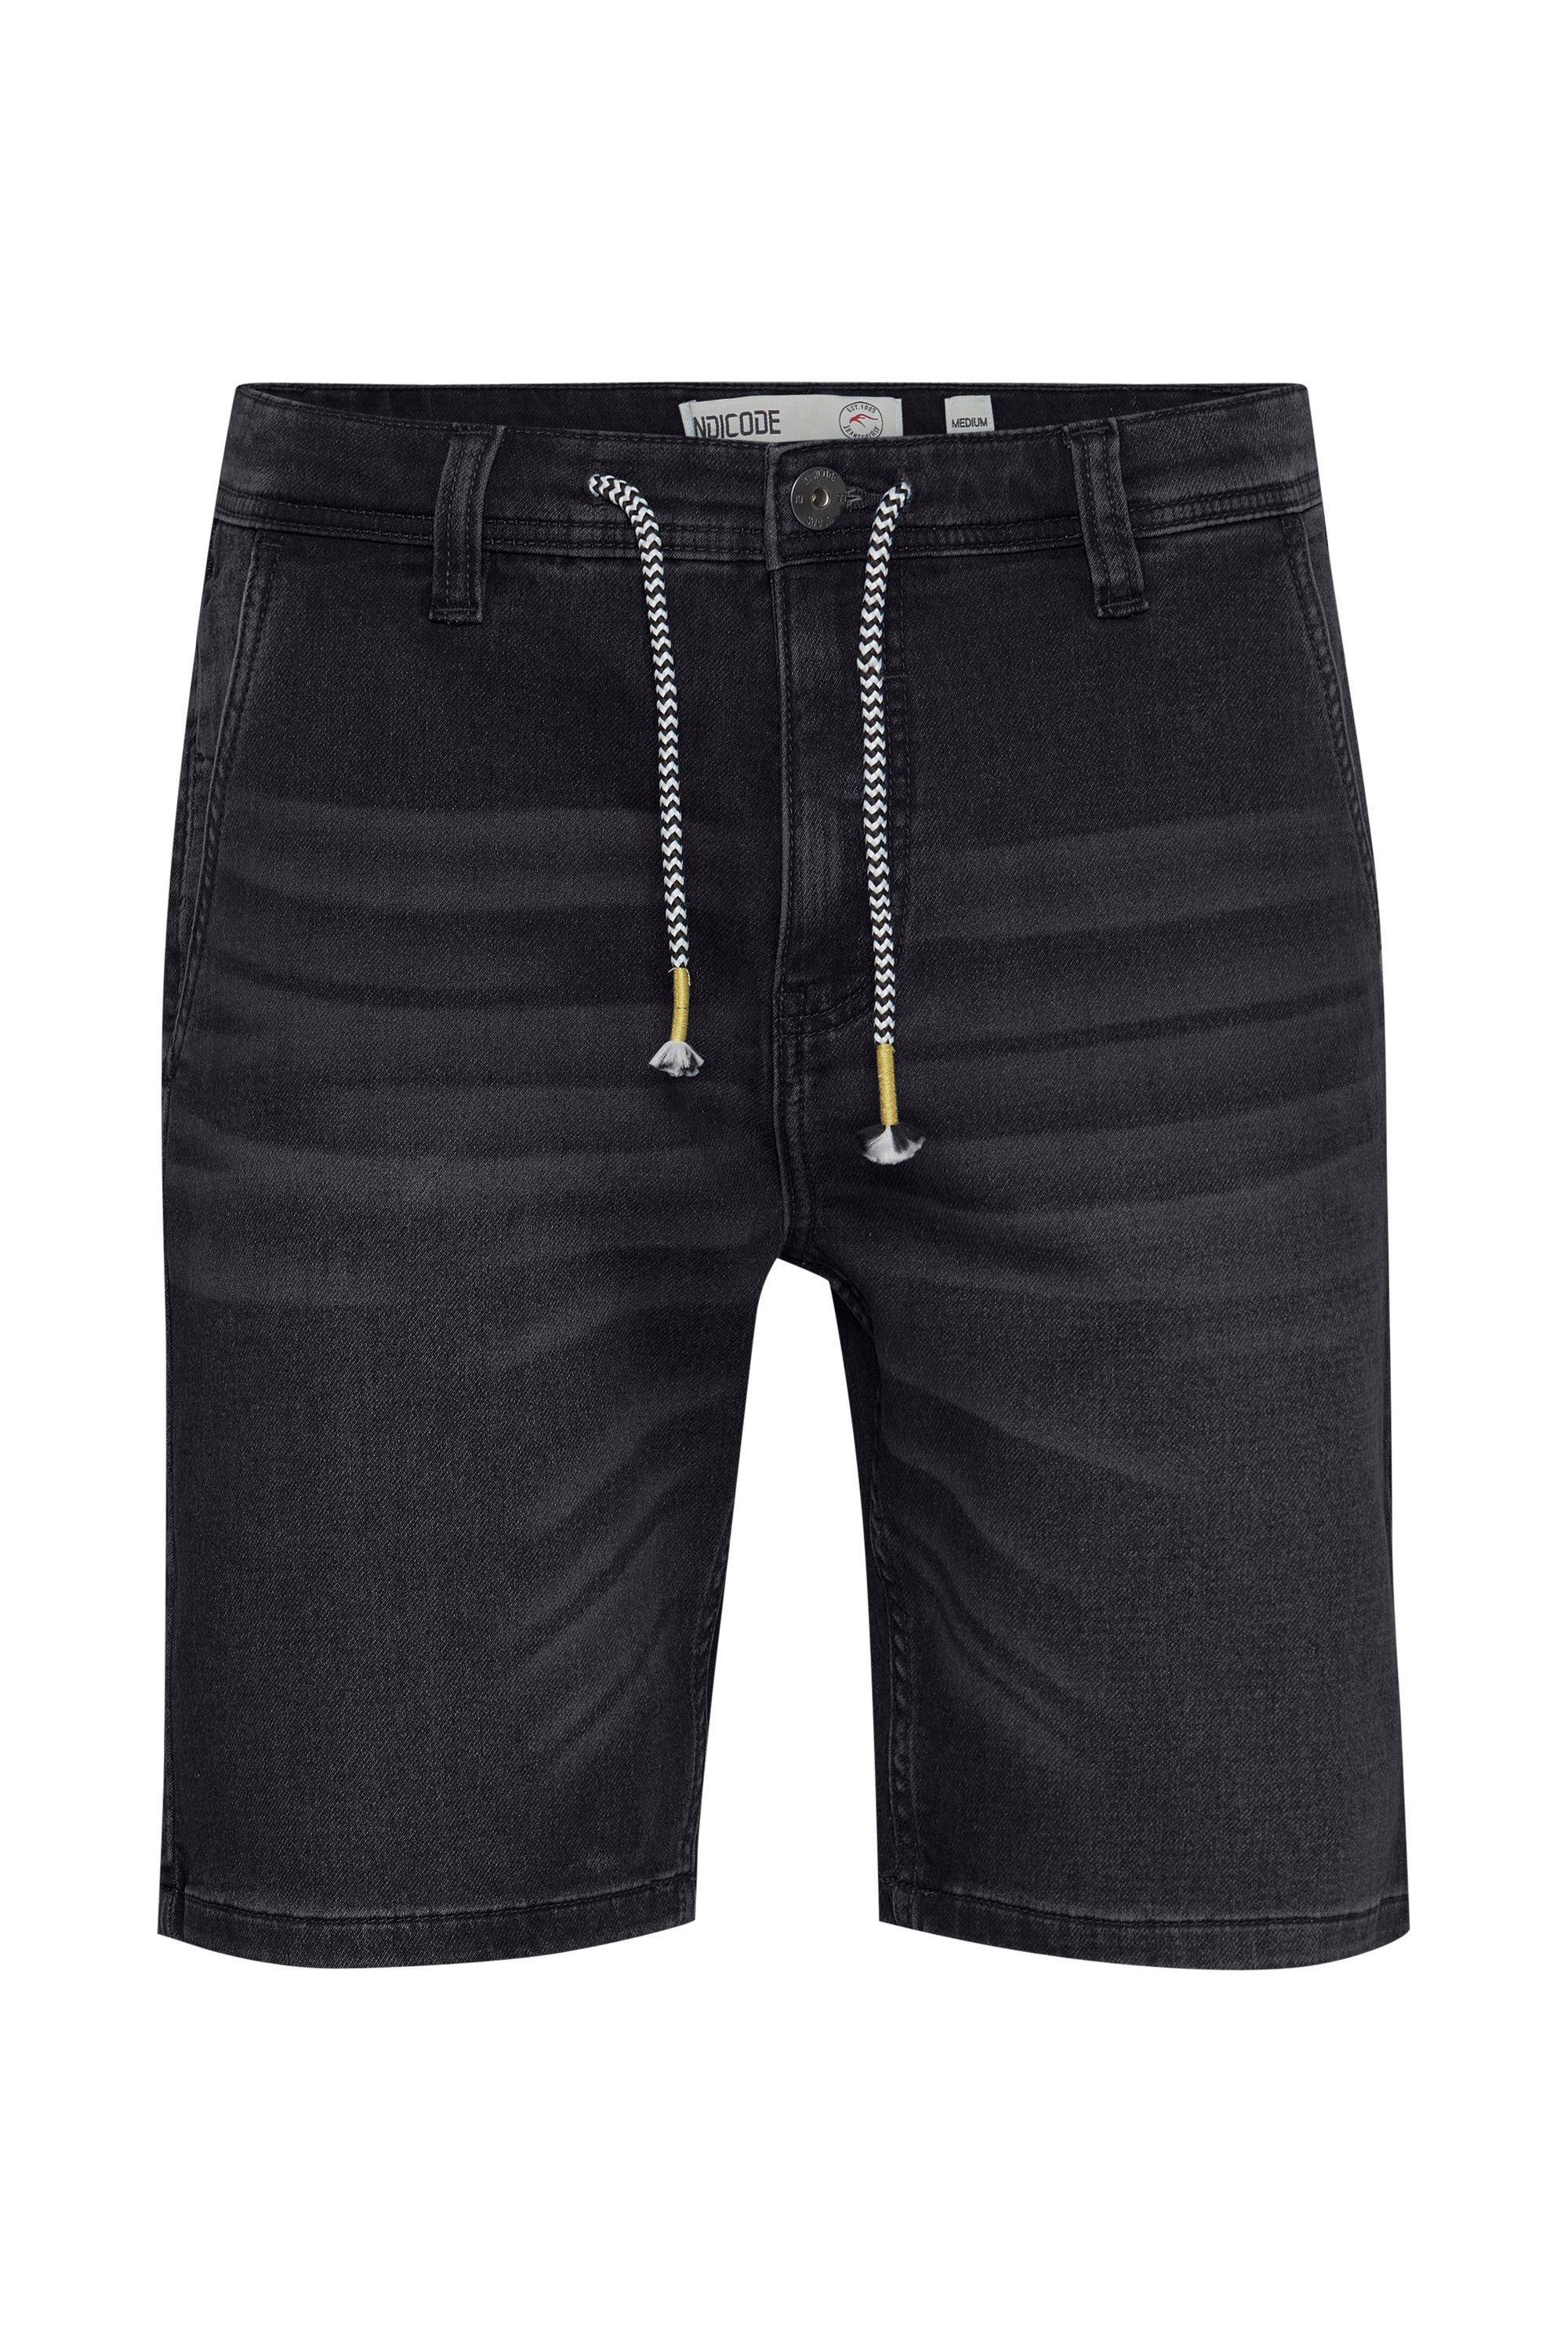 Vintage (992) Black Shorts IDGodo Indicode